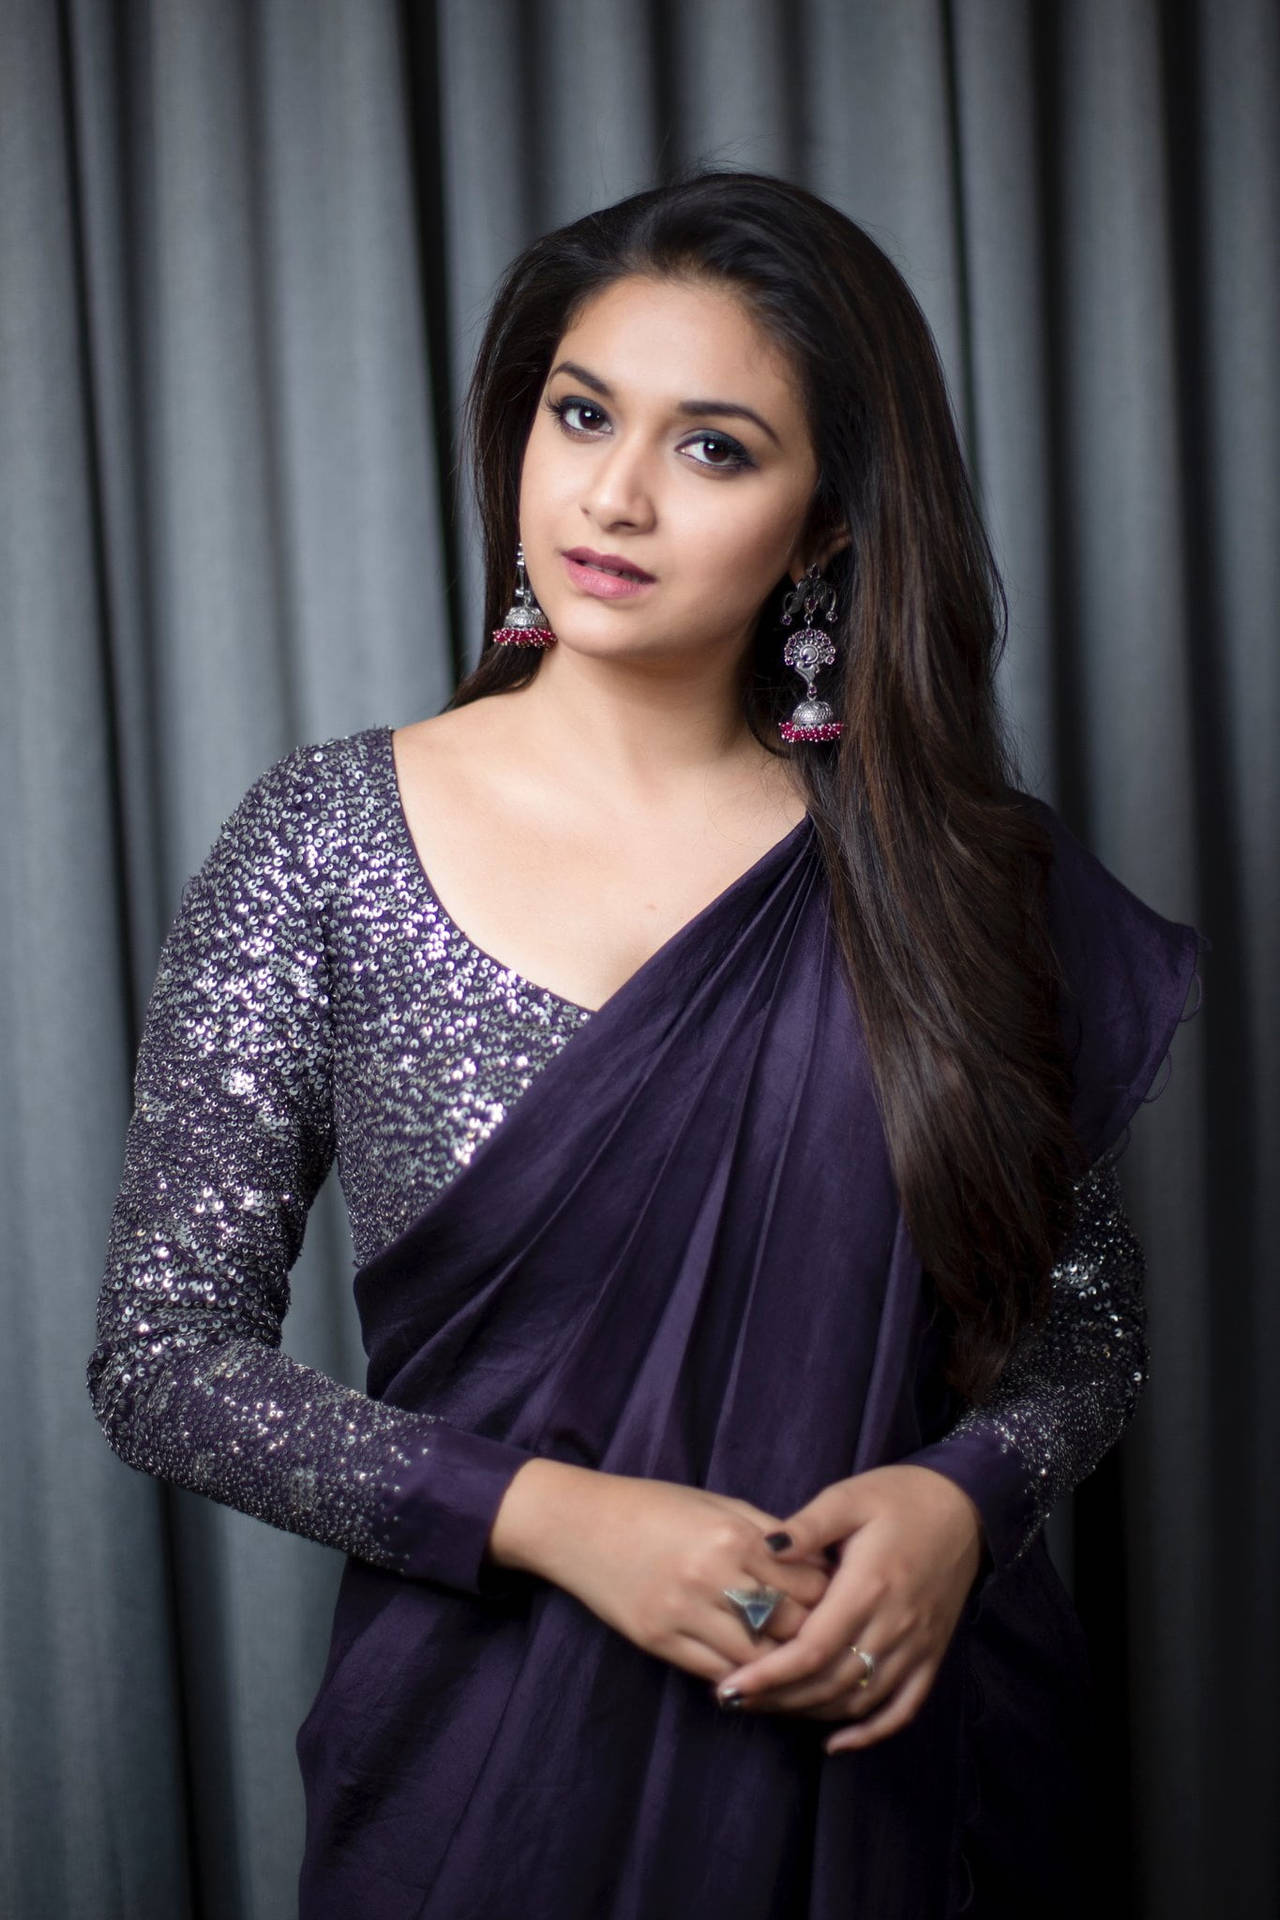 Keerthi Suresh Radiating Elegance In Dark Violet Outfit Background